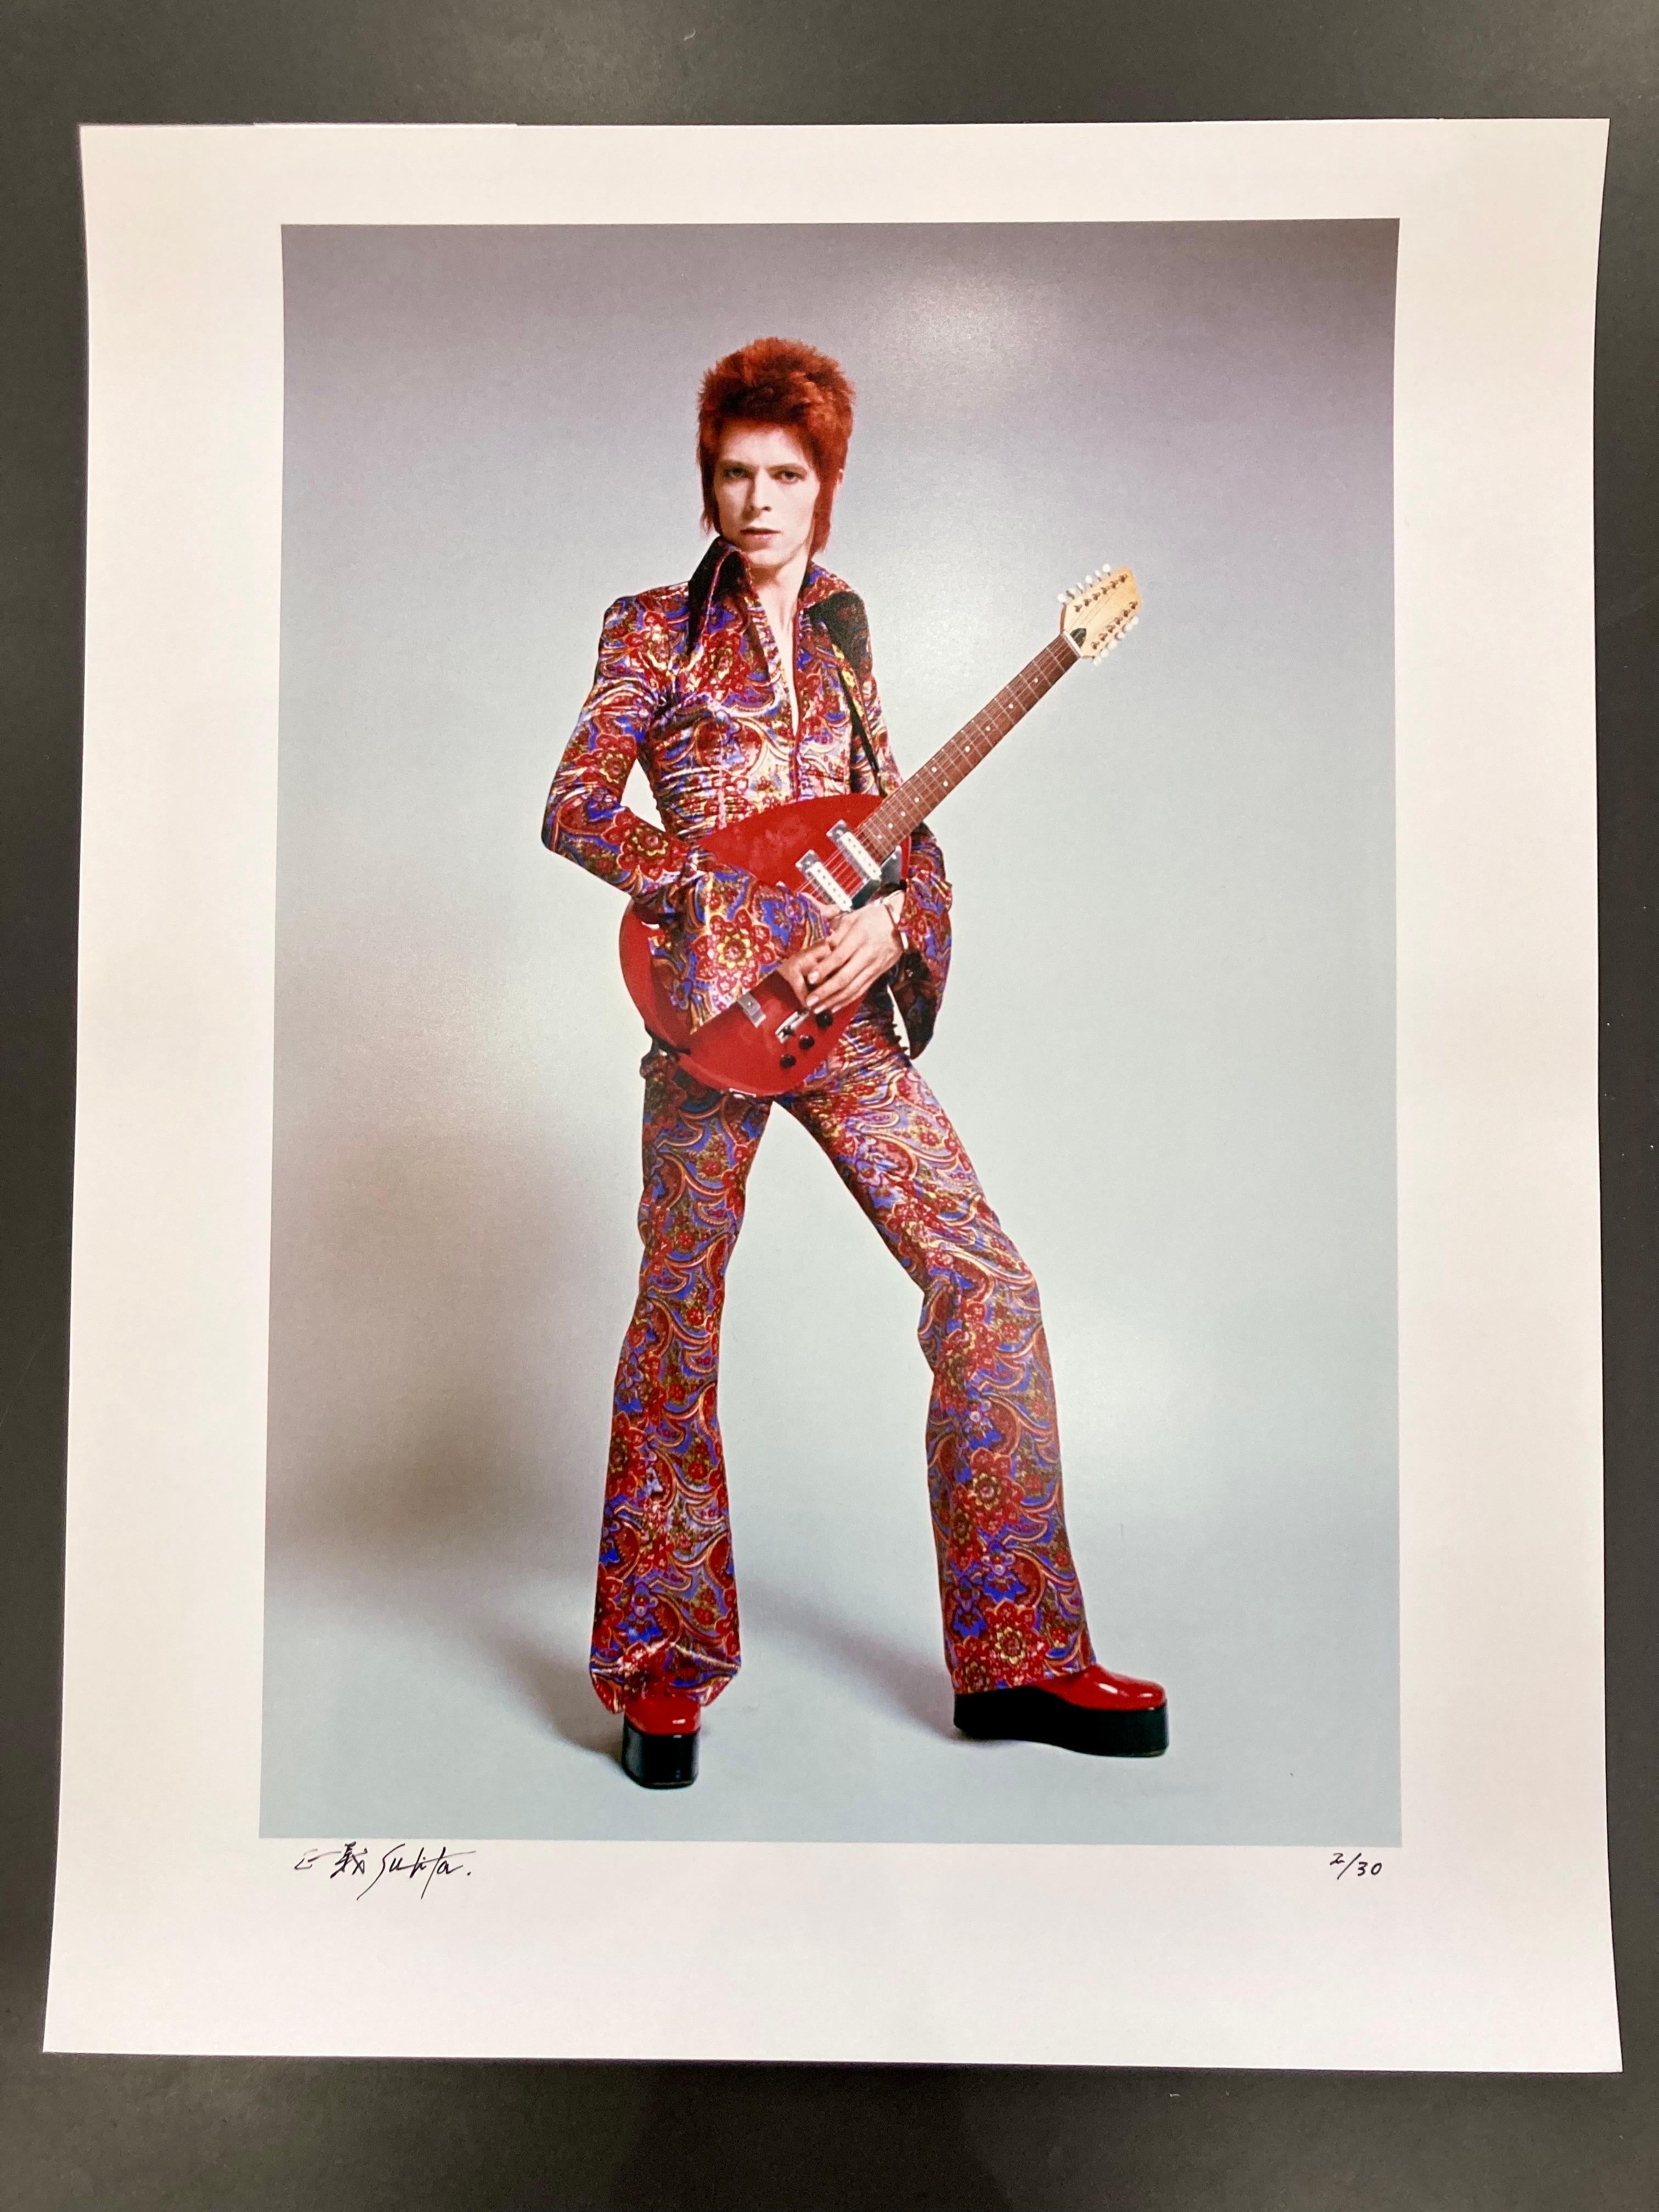 David Bowie „The First Time I Saw You“ 1972 von Sukita – Photograph von Masayoshi Sukita